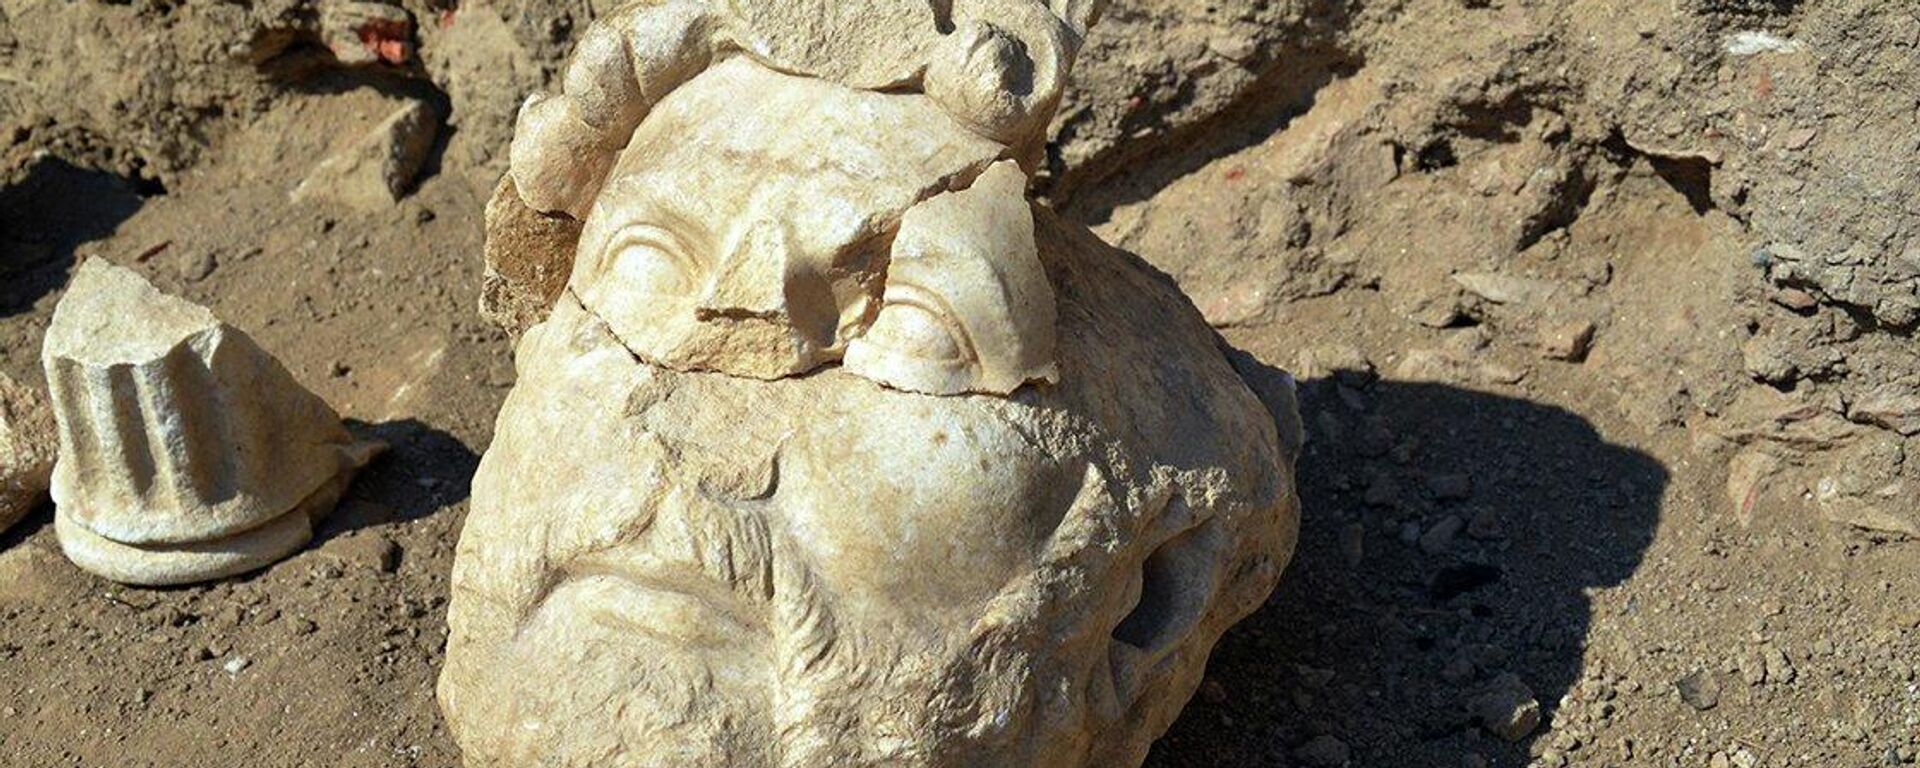 Фрагмент мраморной статуи римского императора Публия Элия Траяна Адриана, найденный в Турции - Sputnik Lietuva, 1920, 18.09.2021